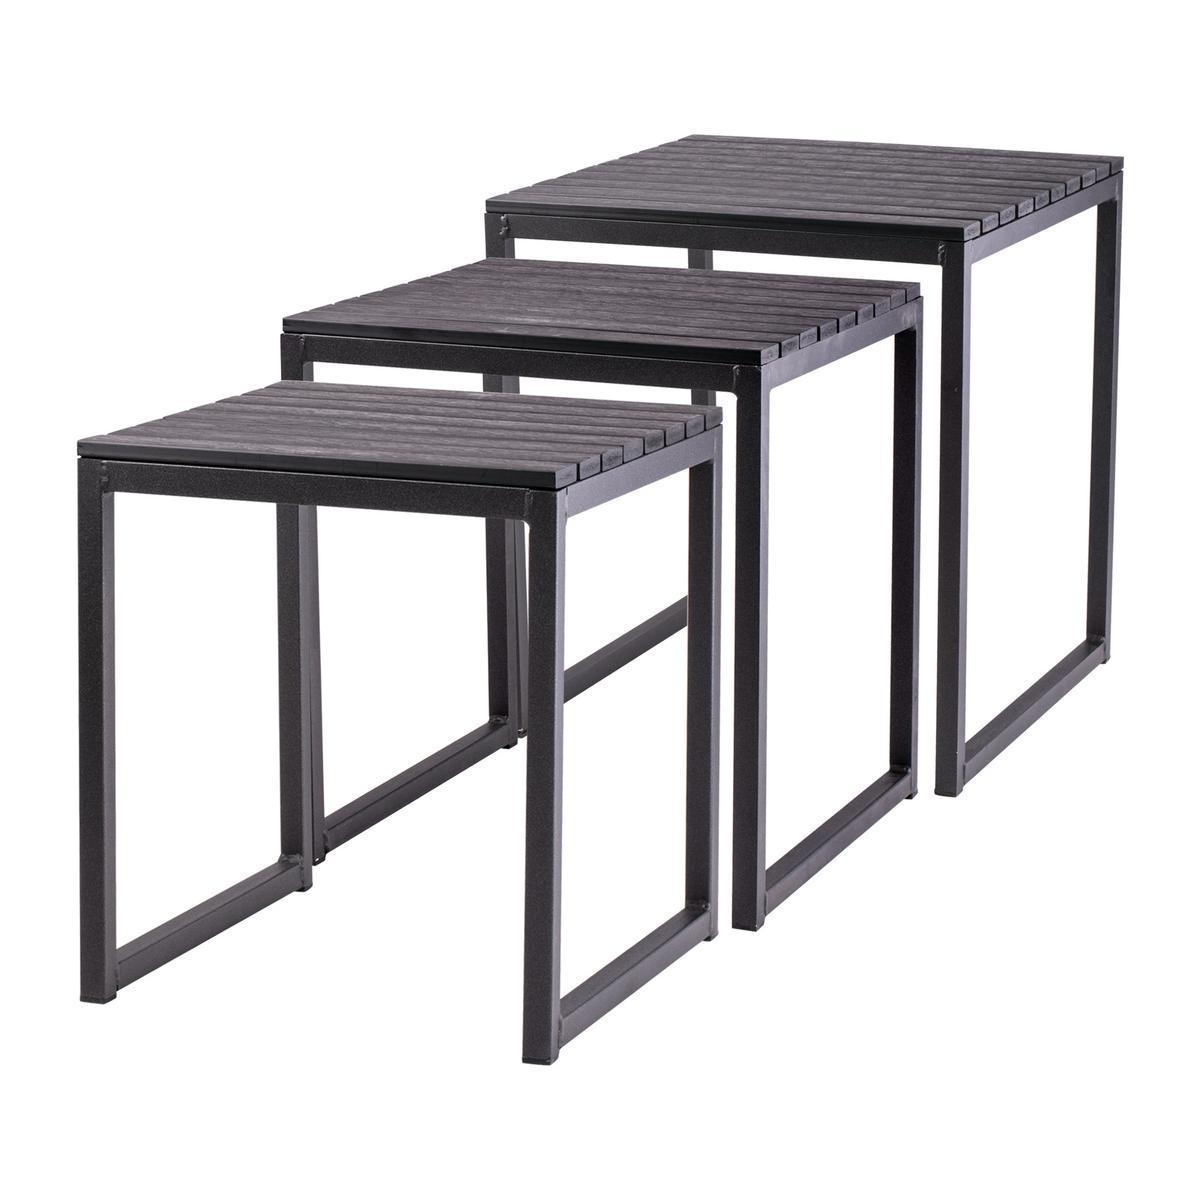 3 tables gigognes - Aluminium et MDF - Noir